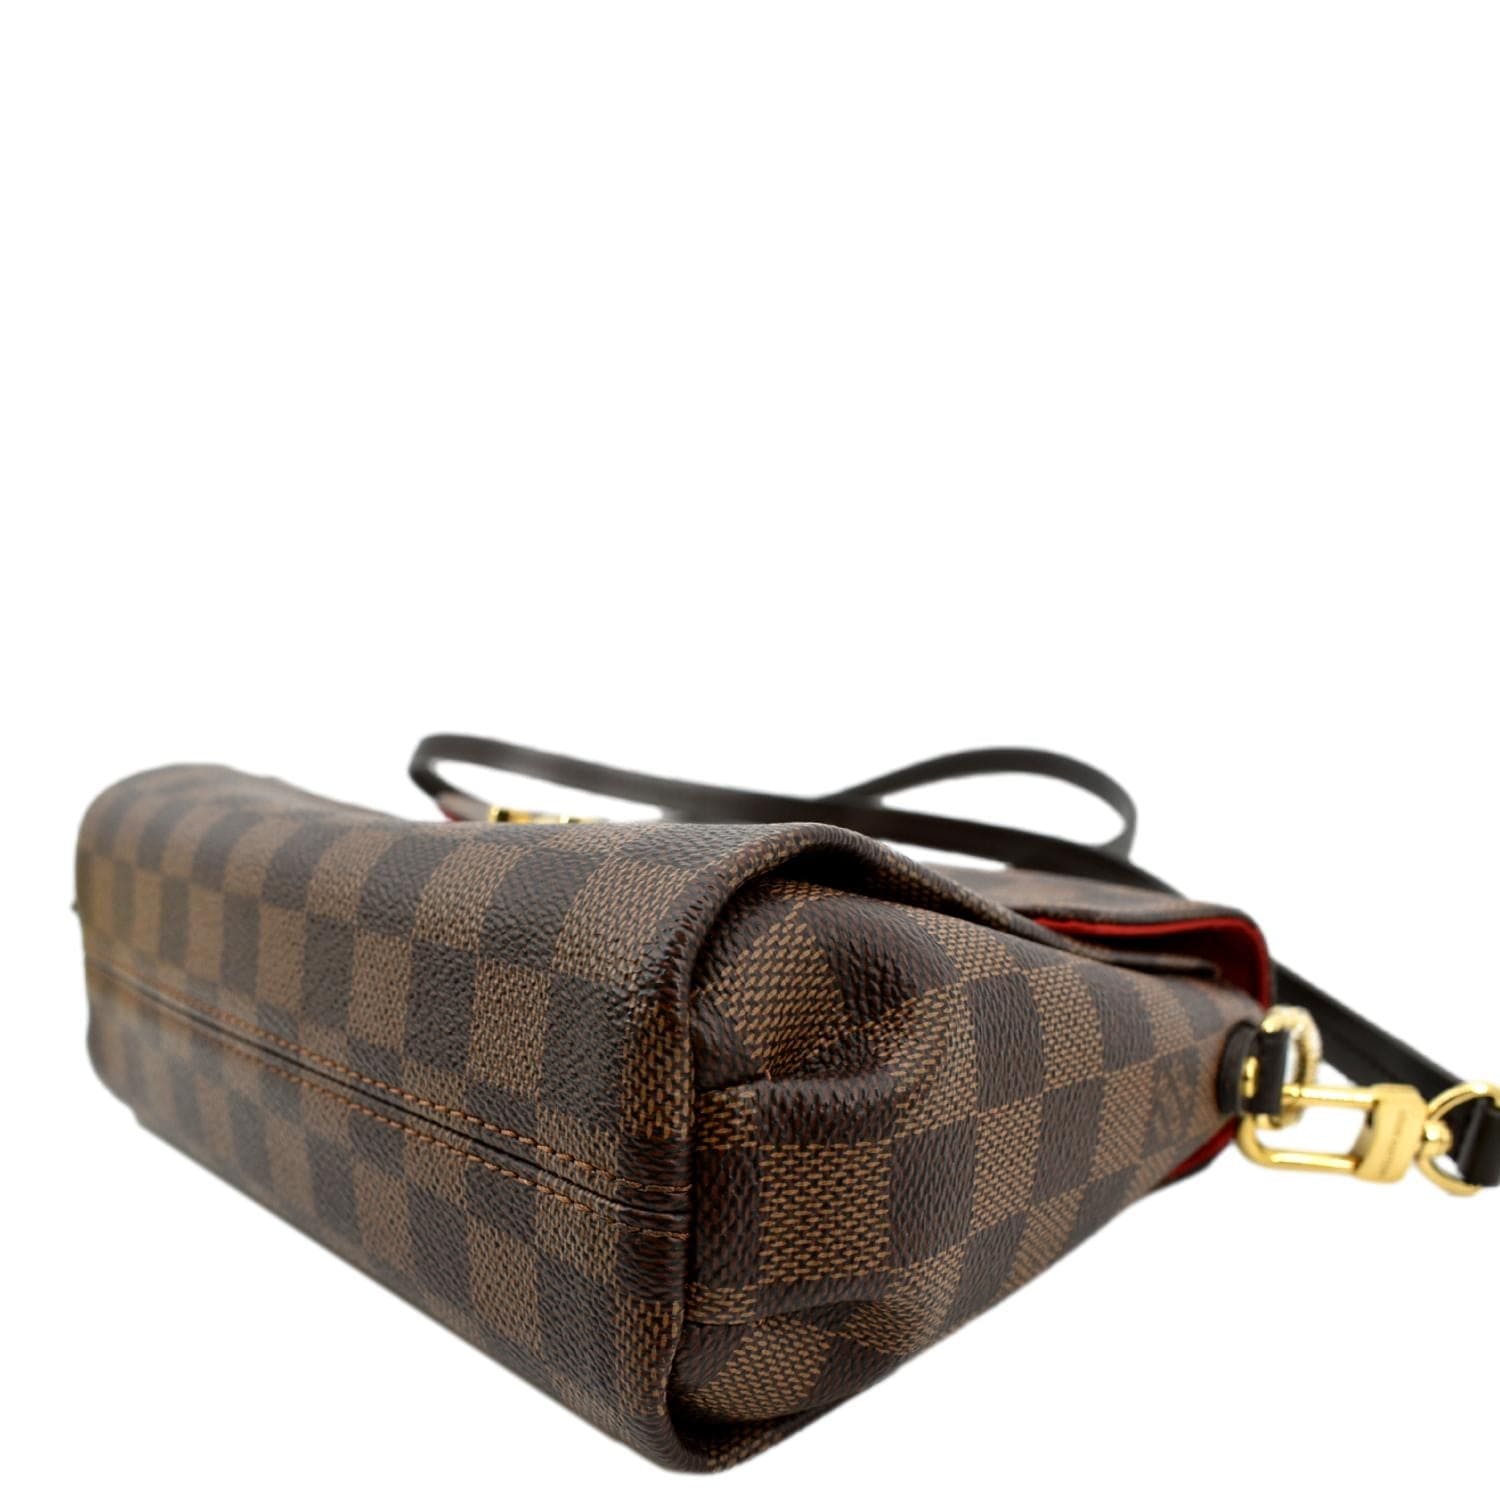 Louis Vuitton Damier Ebene Croisette w/Strap - Brown Handle Bags